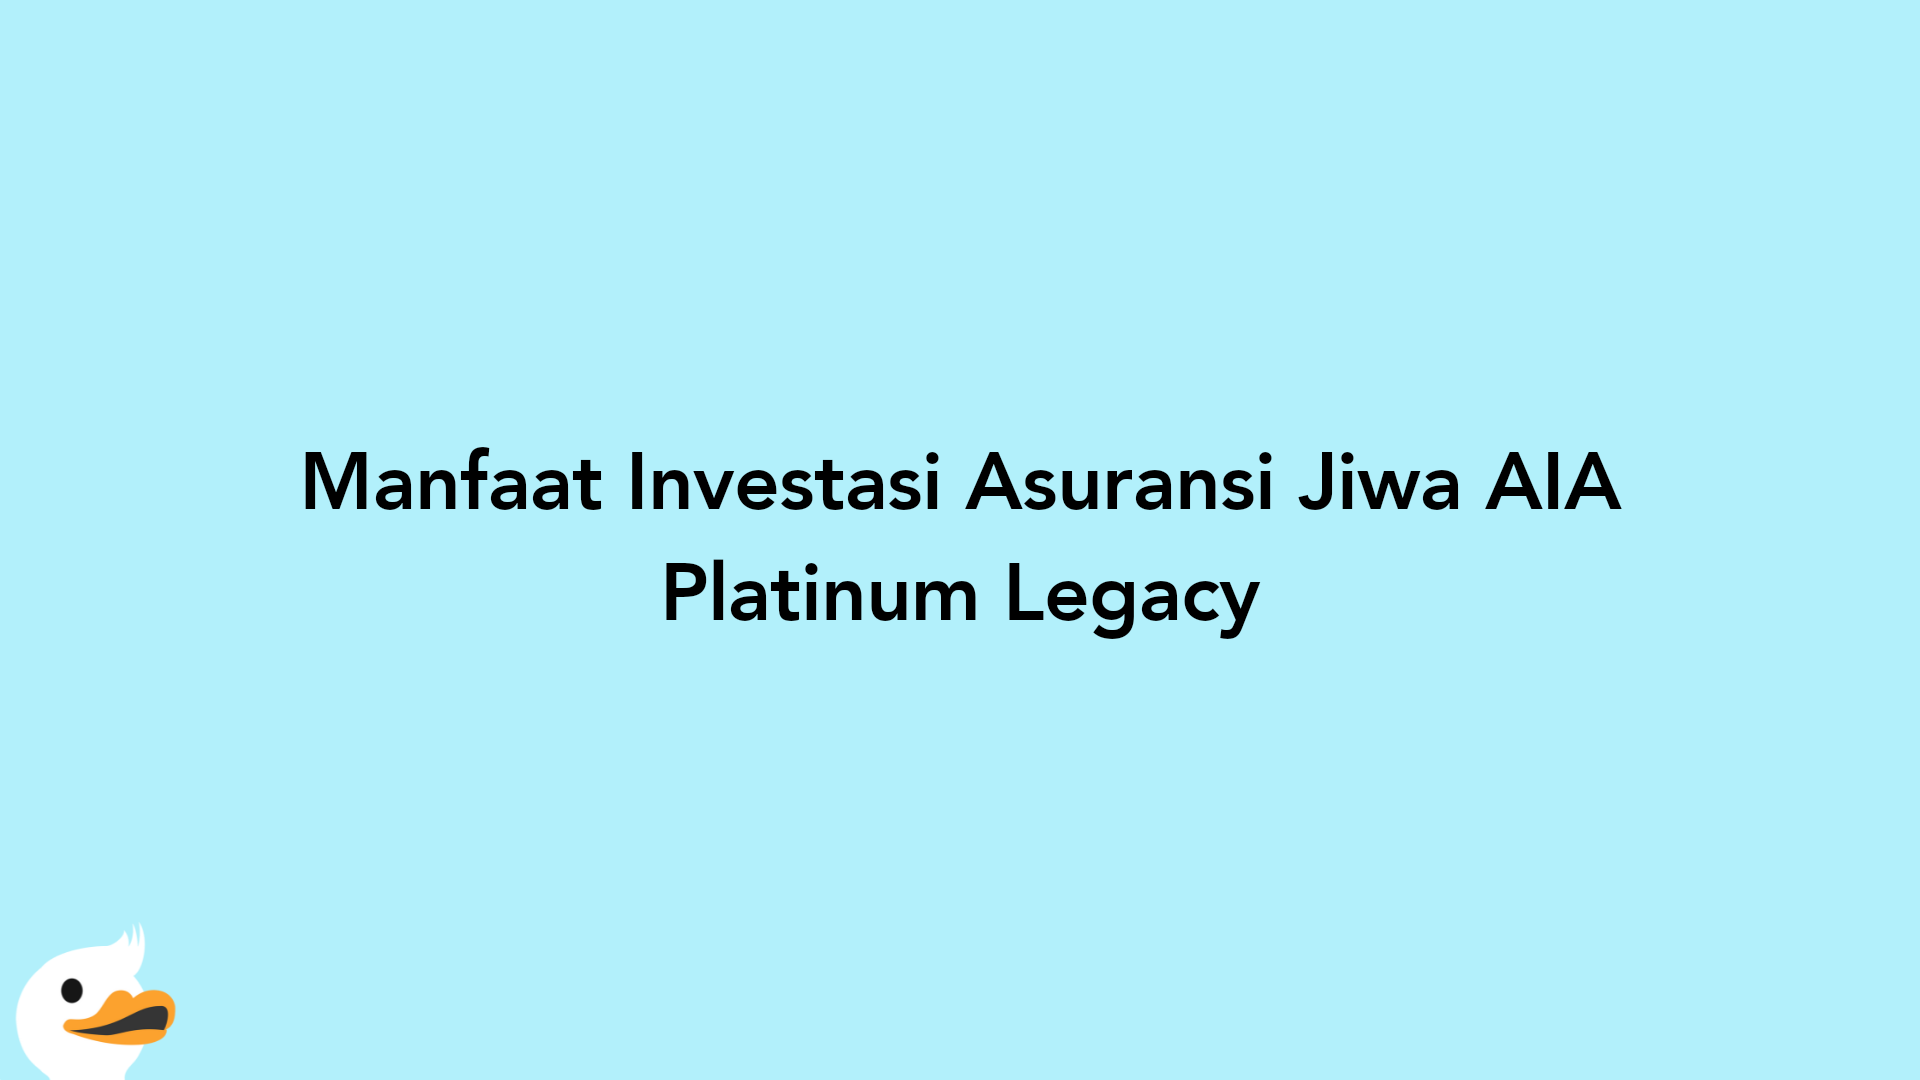 Manfaat Investasi Asuransi Jiwa AIA Platinum Legacy